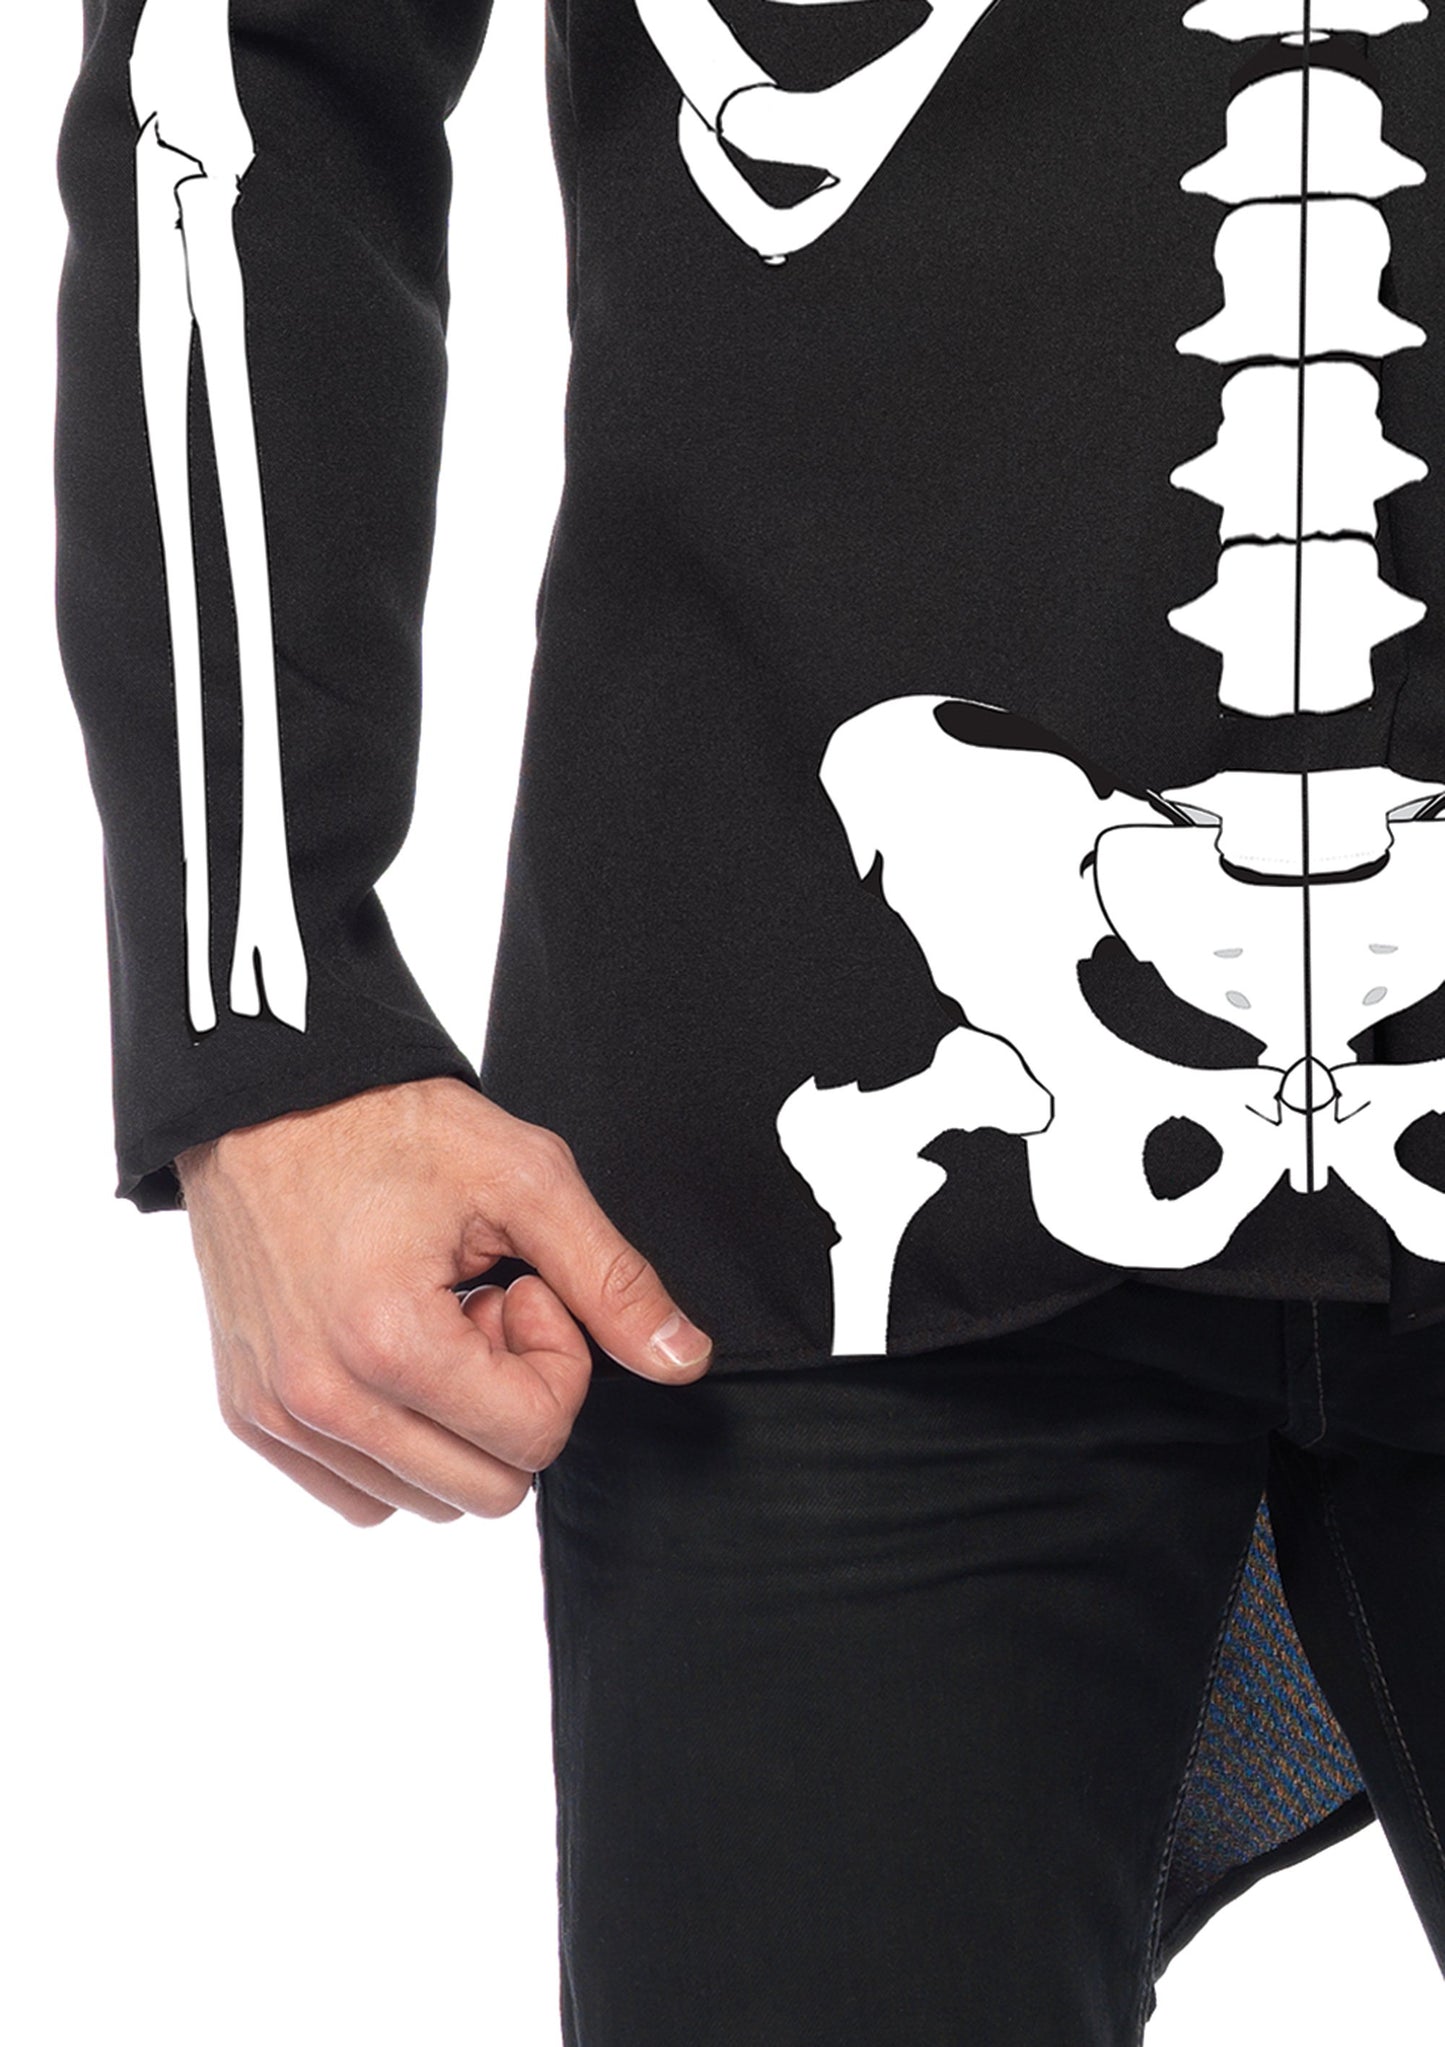 Bone Daddy Men's Skeleton Costume